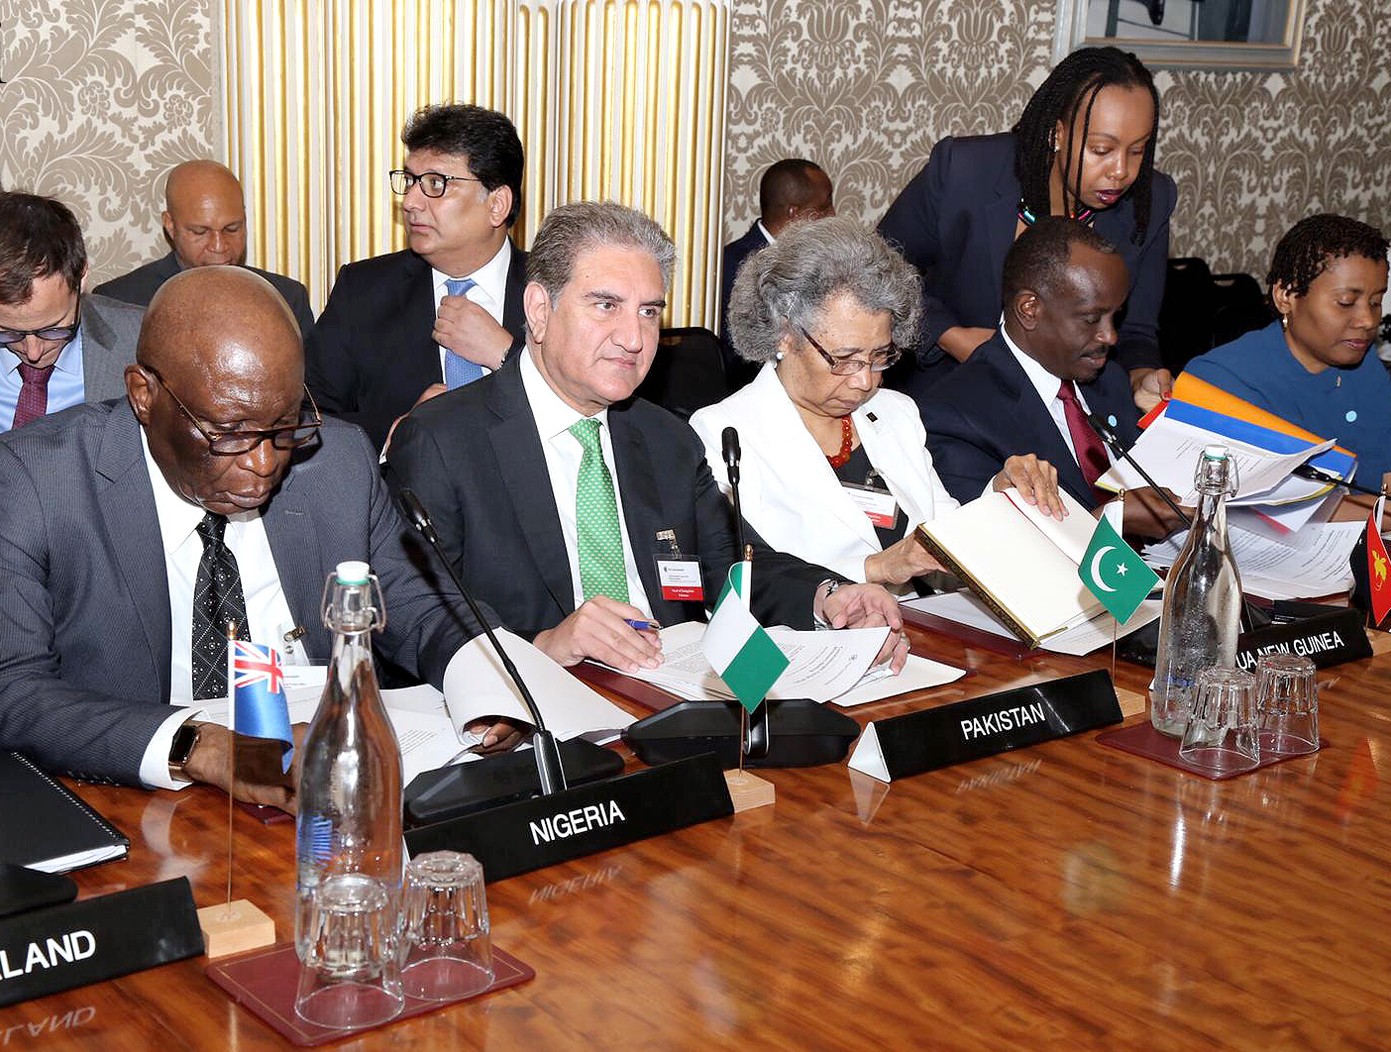 لندن : وزیر خارجہ شاہ محمود قریشی دولت مشترکہ کے اجلاس میں پاکستان کی نمائندگی کررہے ہیں